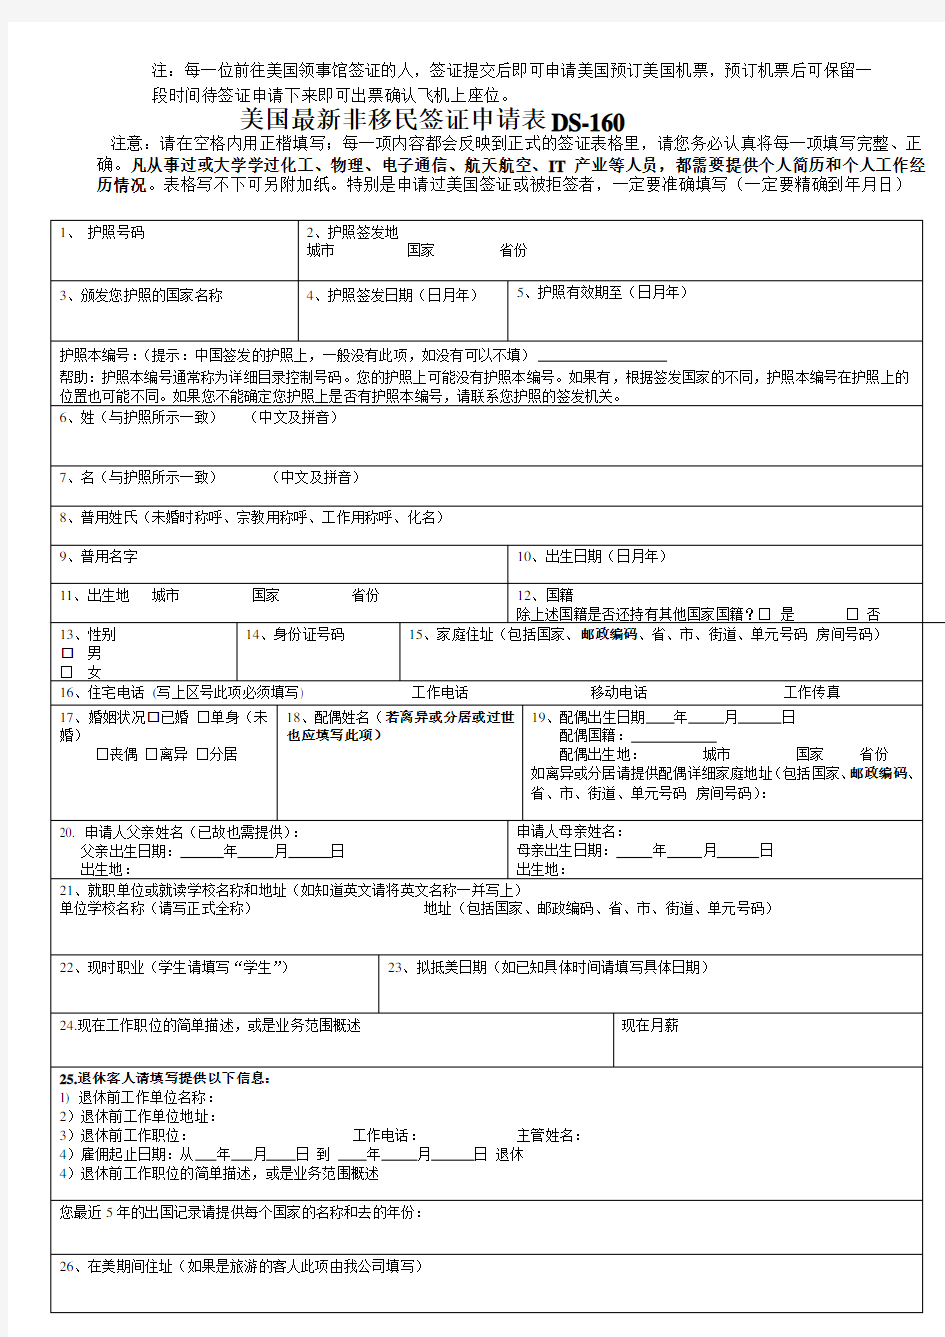 美国最新签证申请表DS-160(中文版)